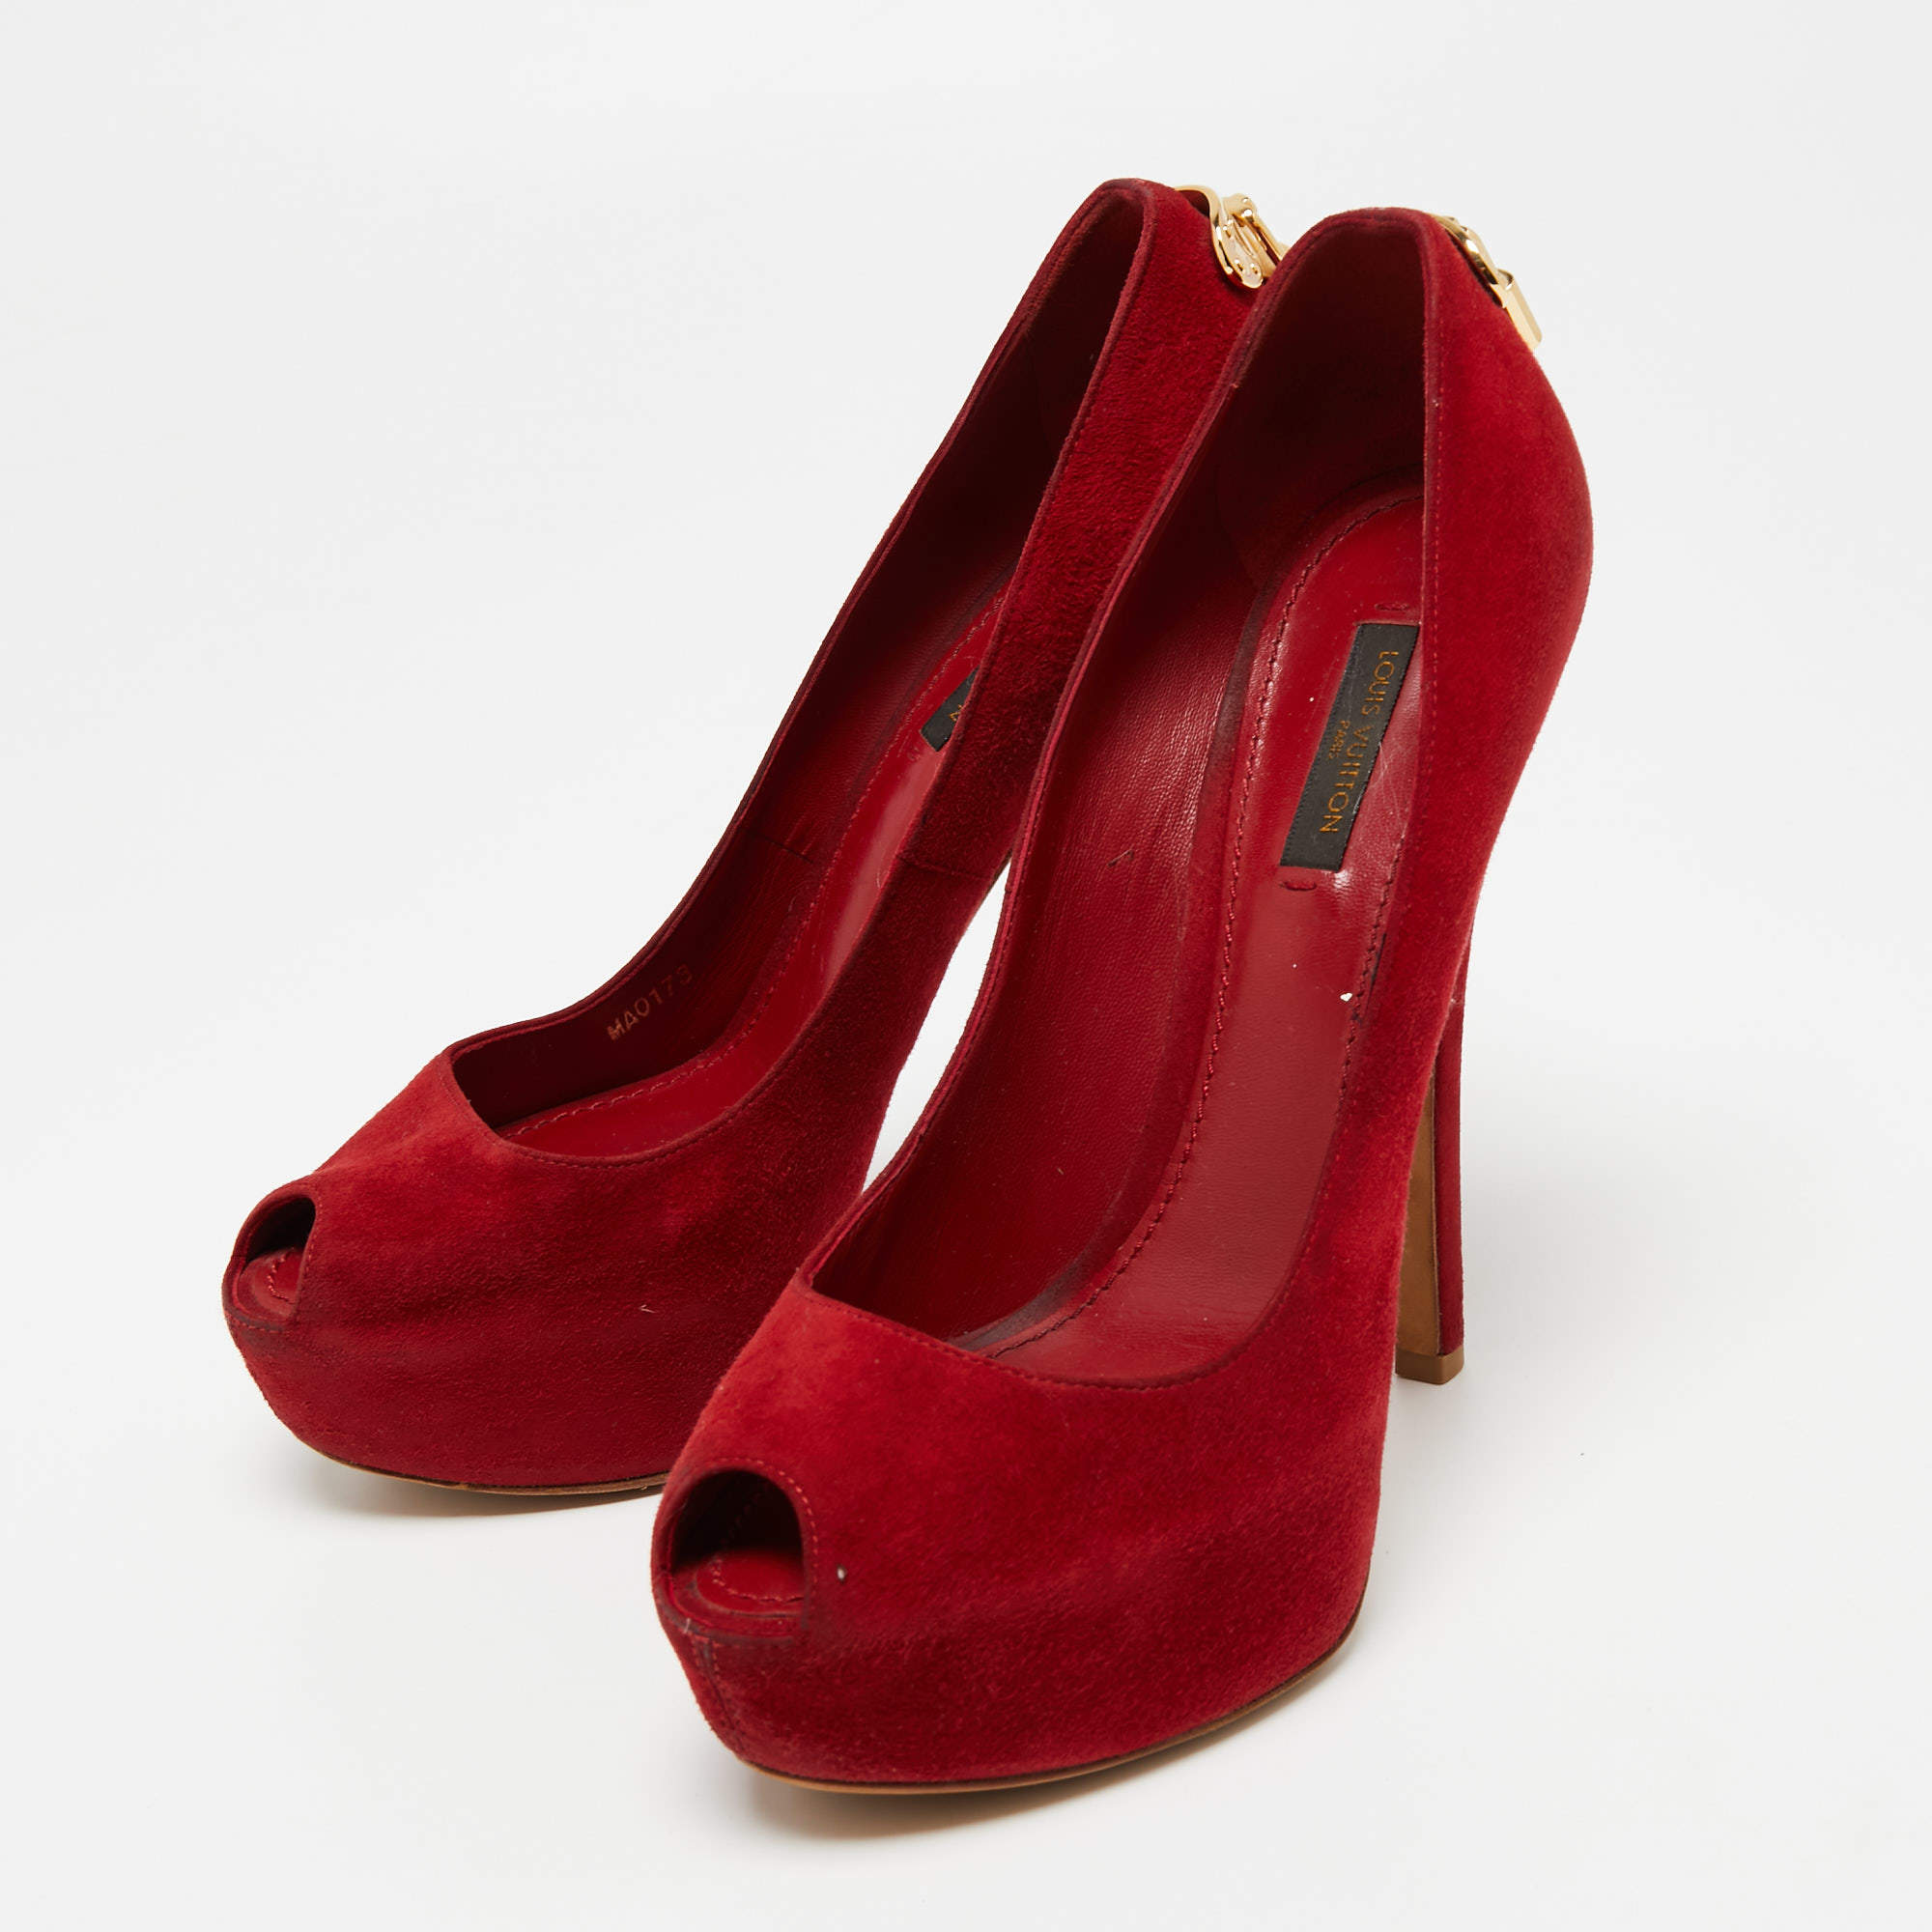 louis vuitton red high heels